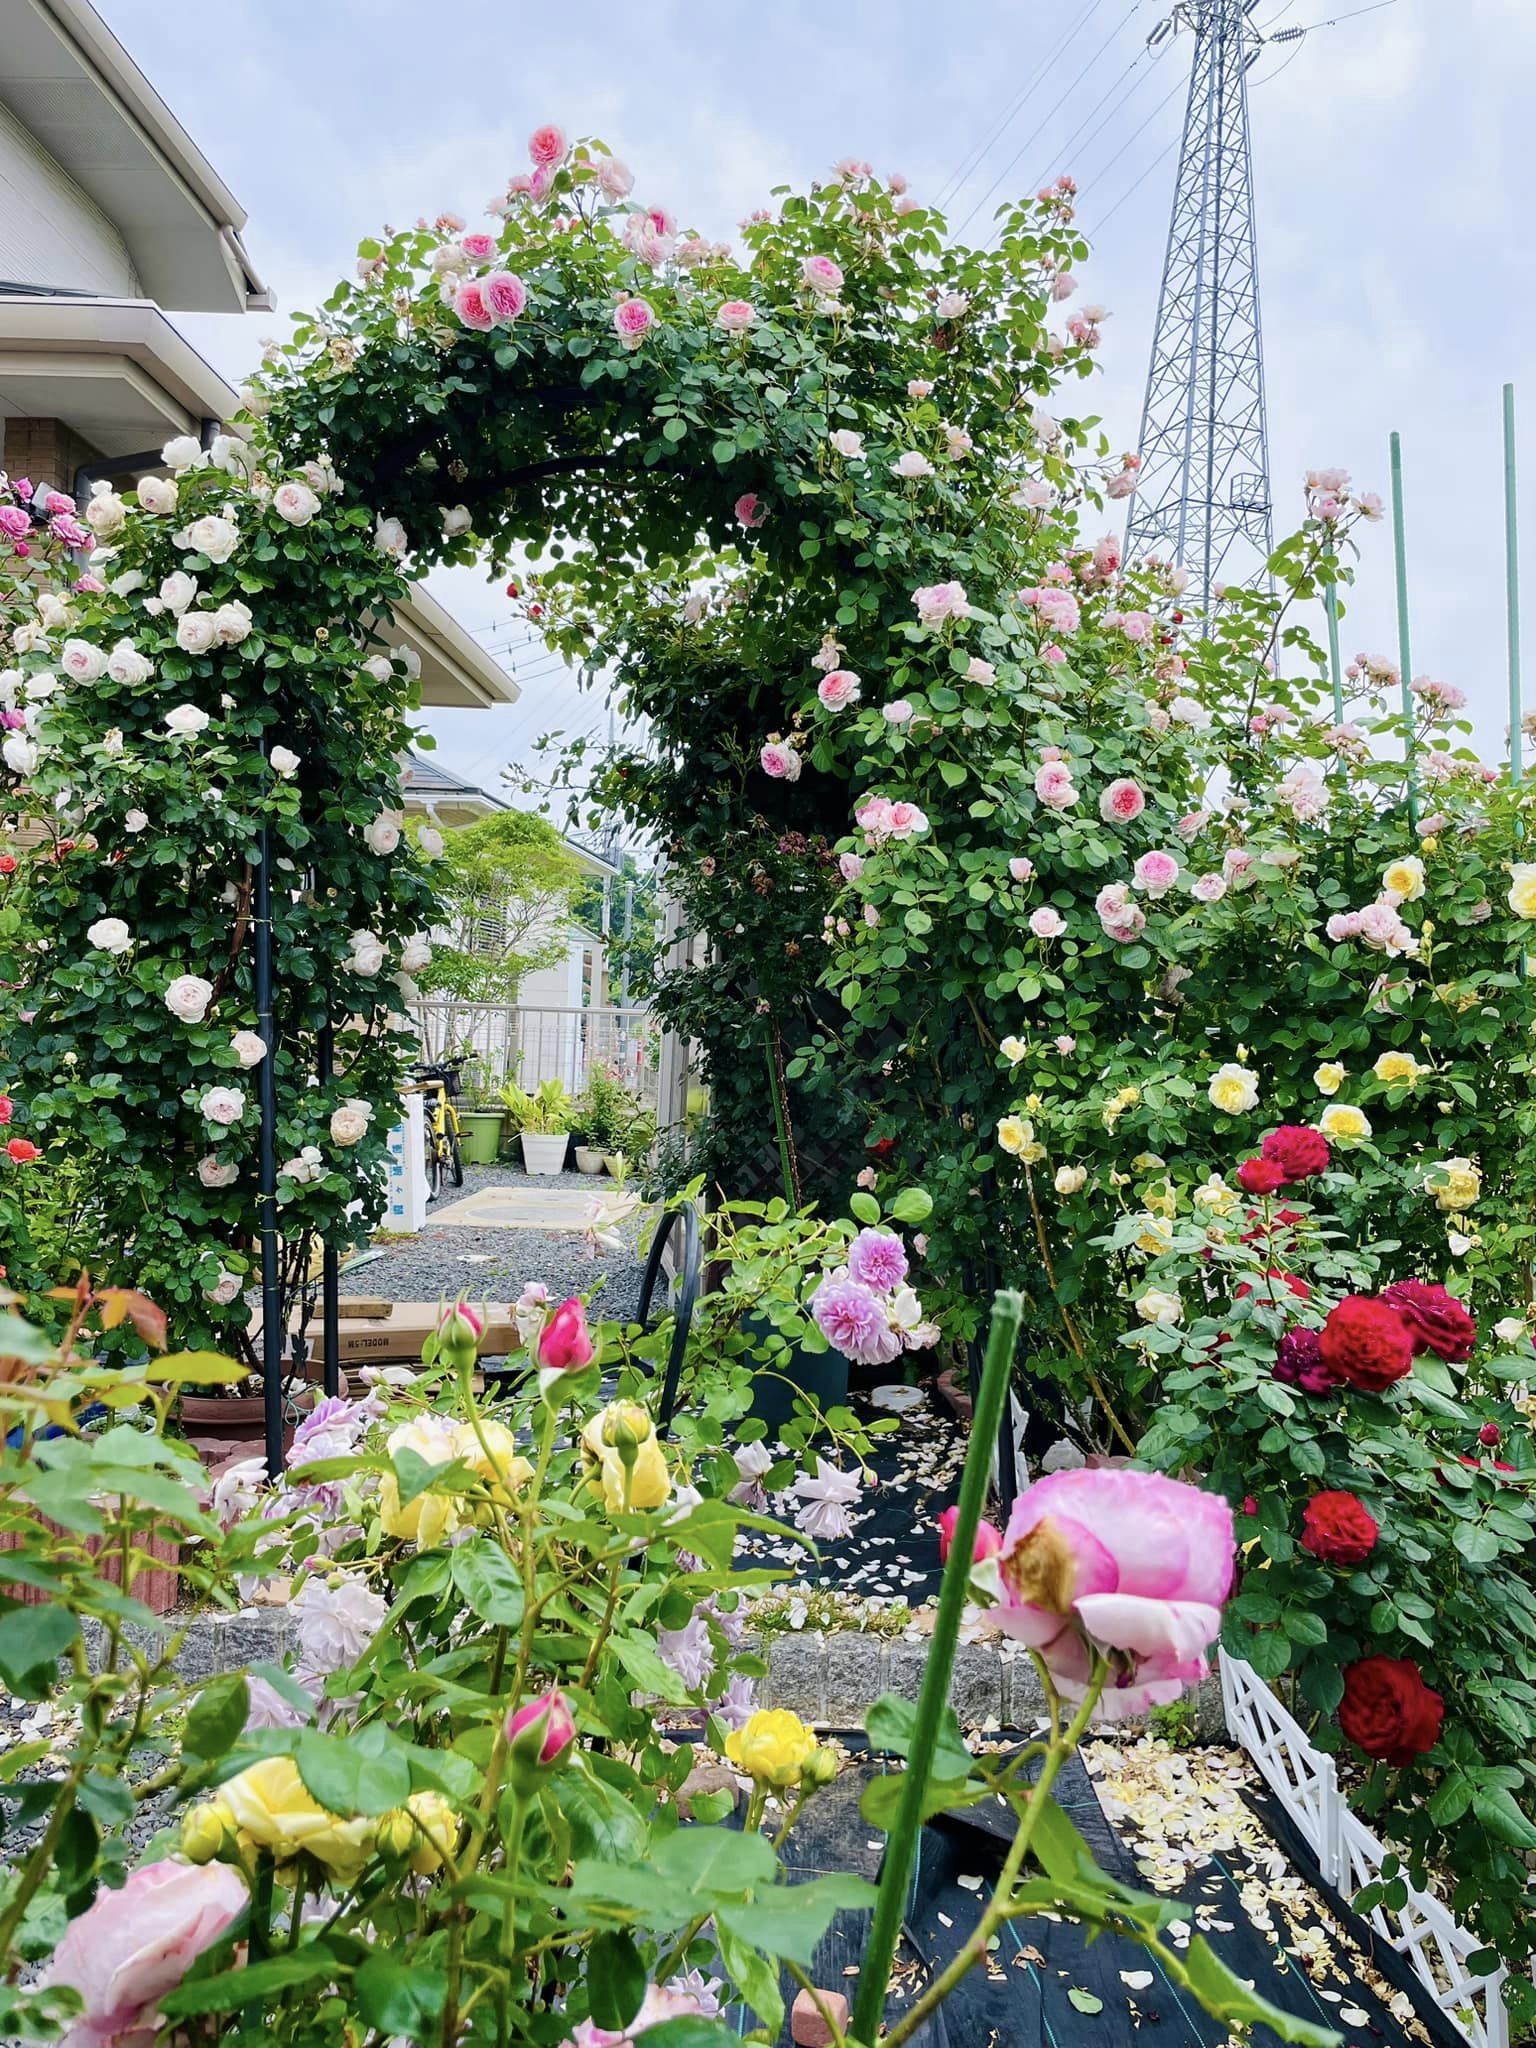 Ngôi nhà lúc nào cũng thơm nức mùi hoa vì có vườn hồng hơn 80 loại của mẹ Việt ở Nhật- Ảnh 10.